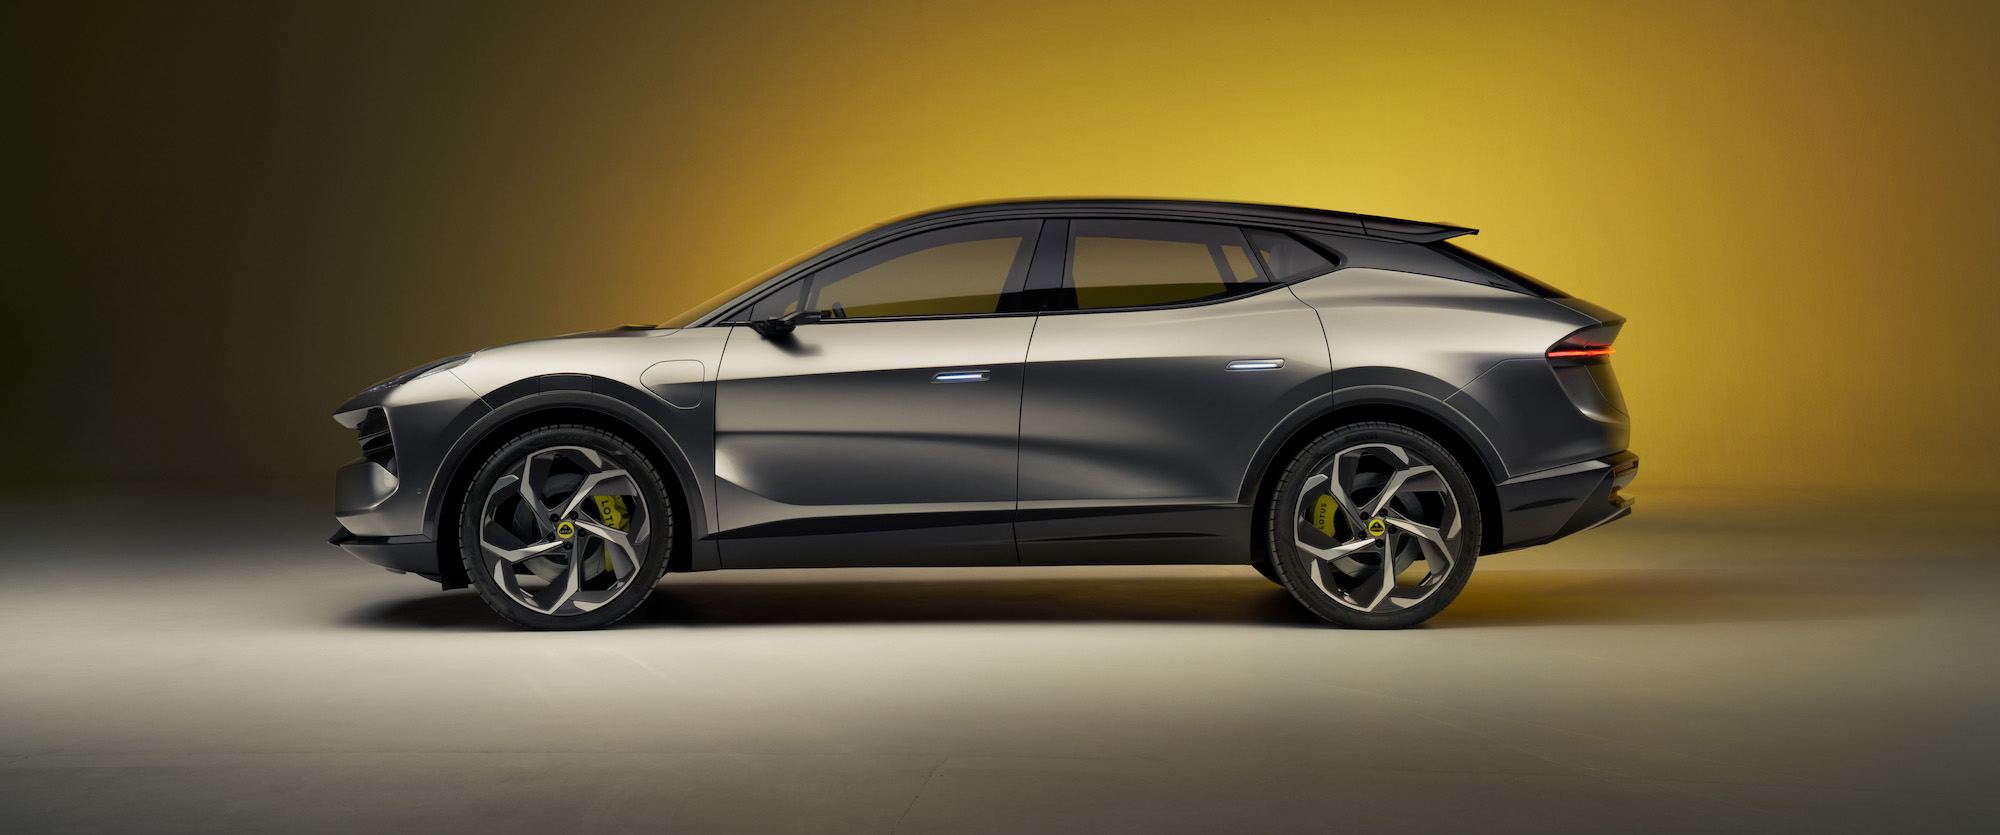 The tech inside the new Lotus Eletre EV hints at autonomous driving  ambitions | TechCrunch